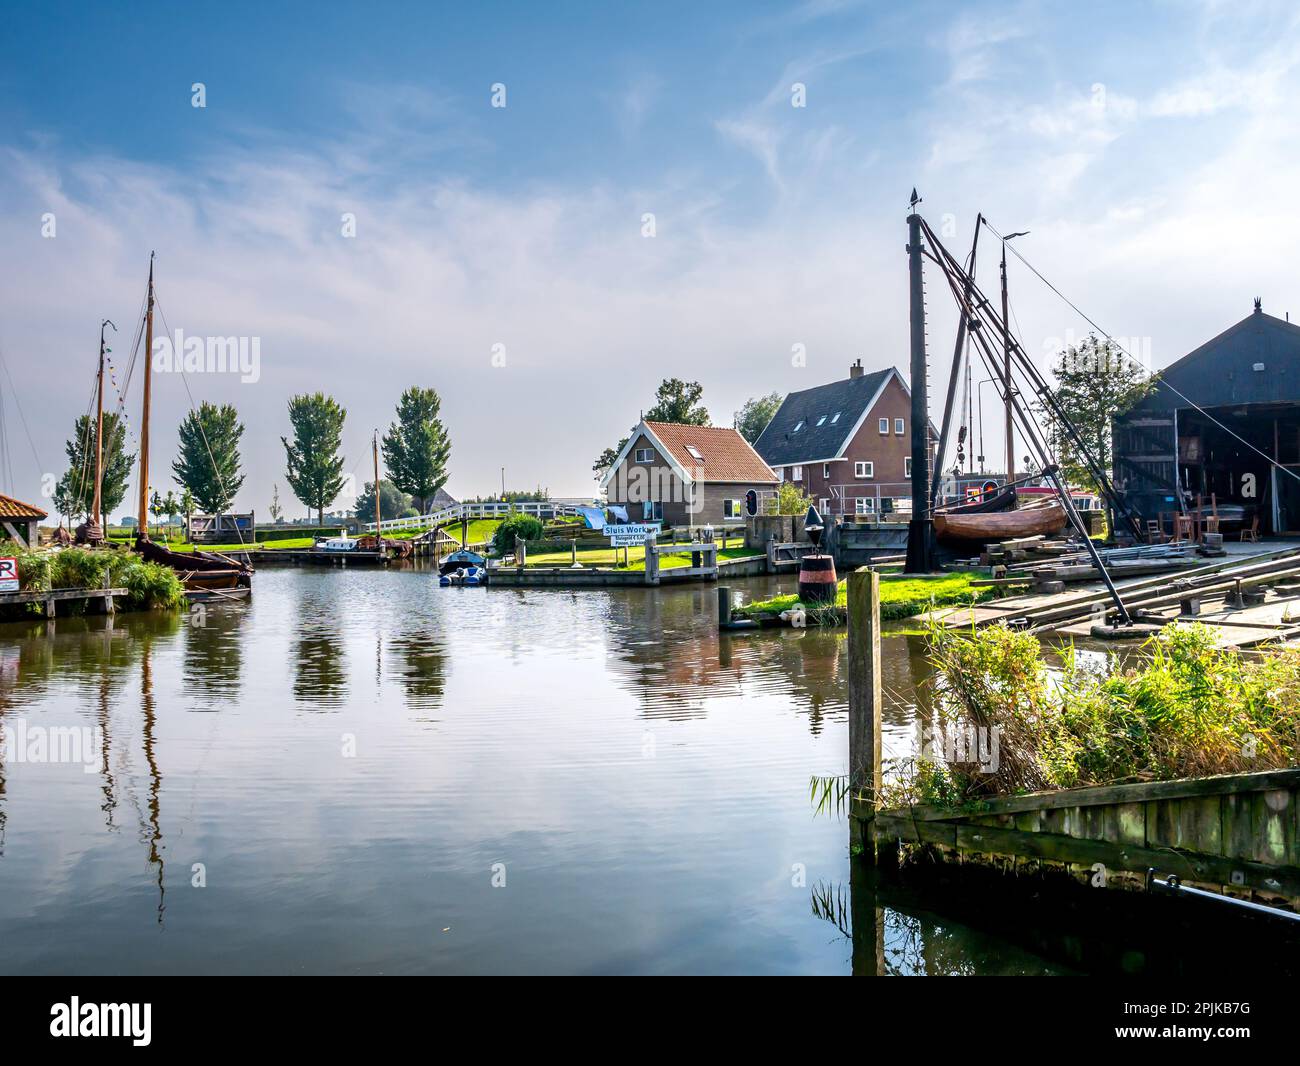 Cantiere tradizionale Scheepstimmerwerf e canale Diepe Dolte nella storica città di Workum, Frisia, Paesi Bassi Foto Stock